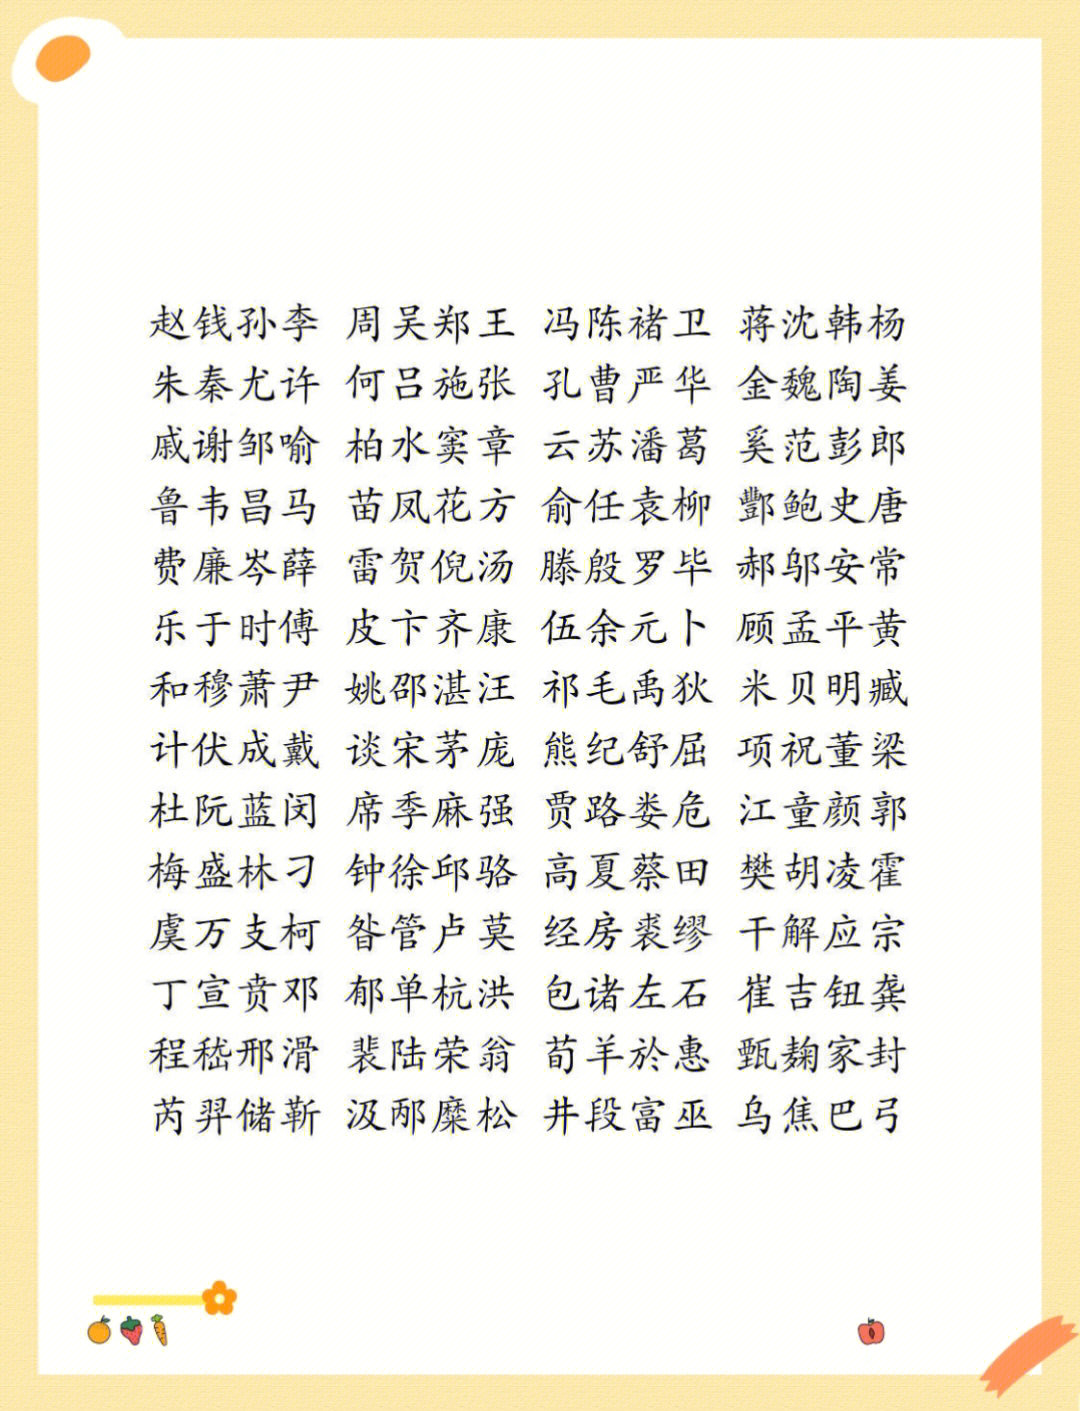 吴越国君主列表图片